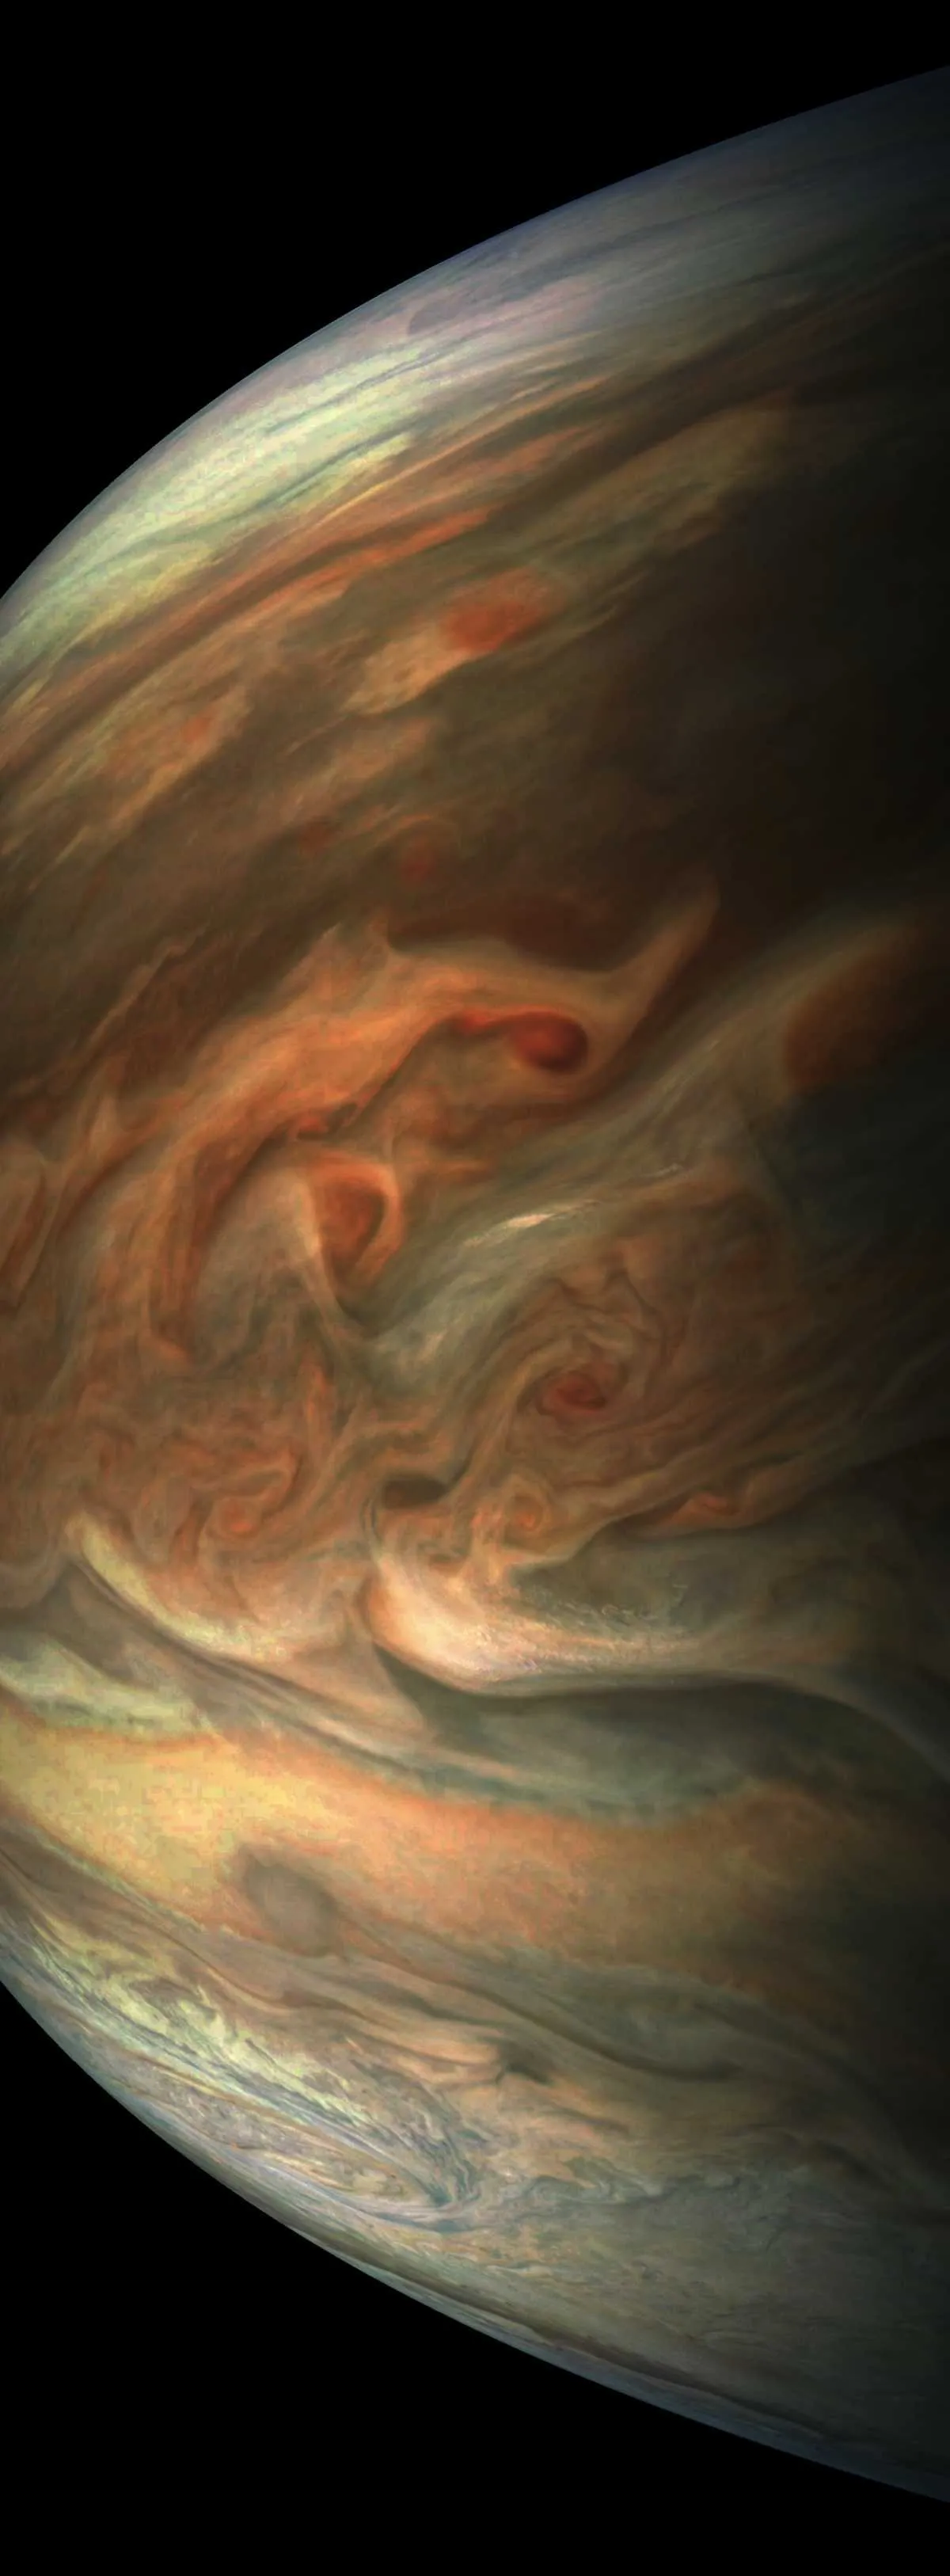 View over Jupiter © NASA/JPL-Caltech/SwRI/MSSS/Gerald Eichstadt